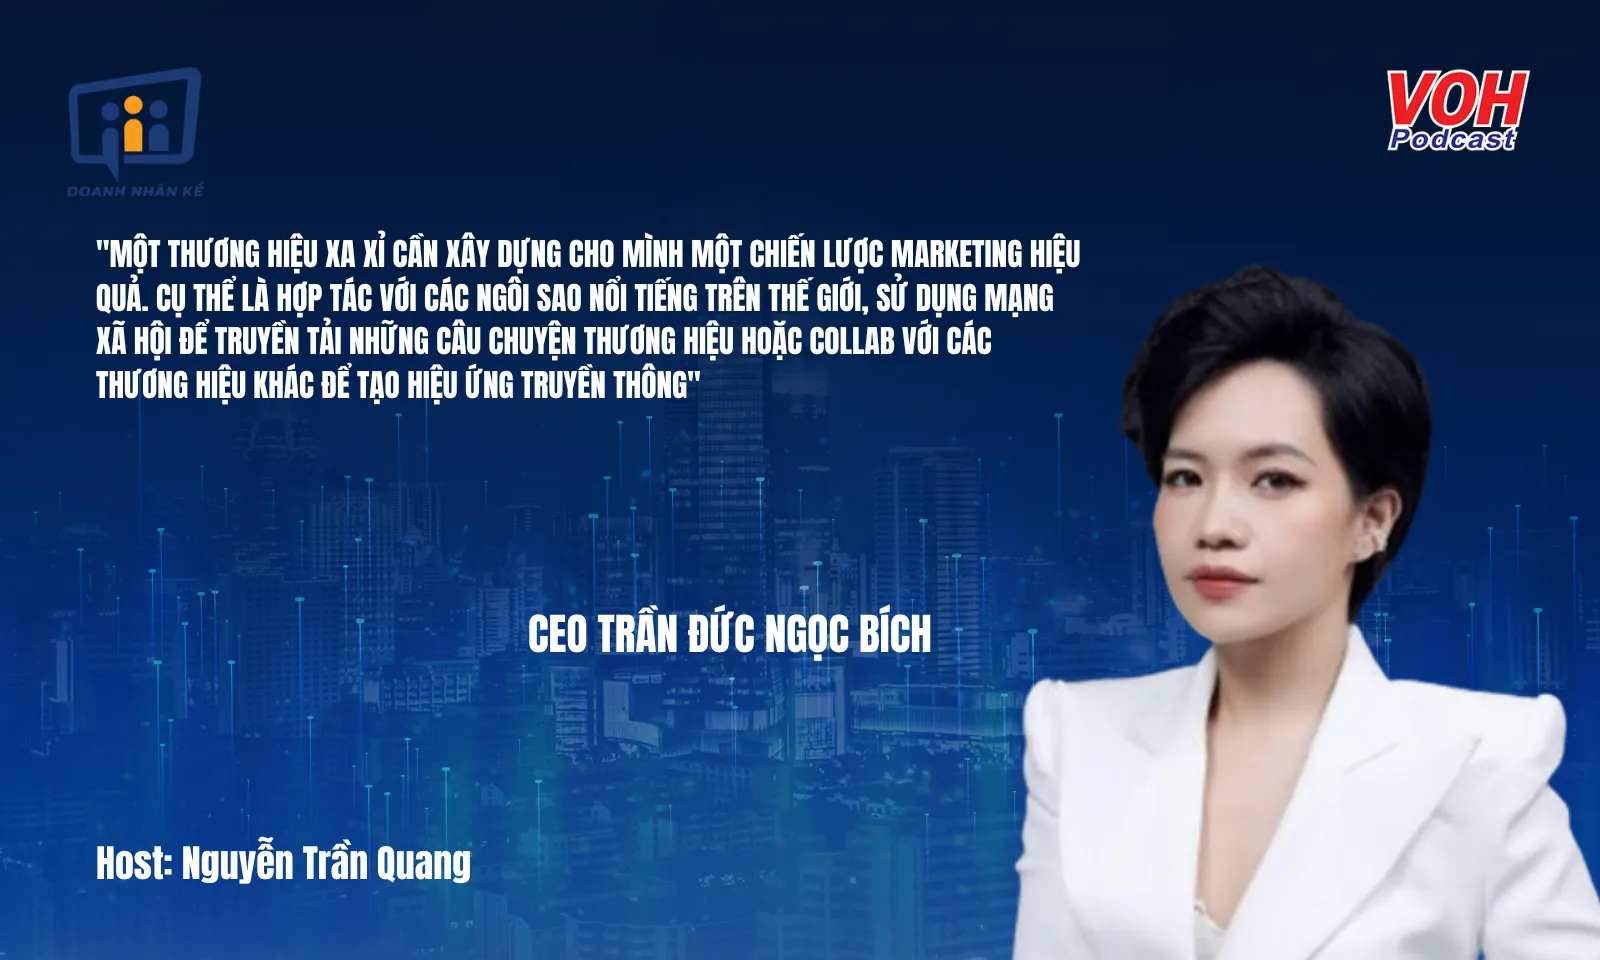 CMO Trần Đức Ngọc Bích: Chinh phục khách hàng siêu giàu | DNK #110